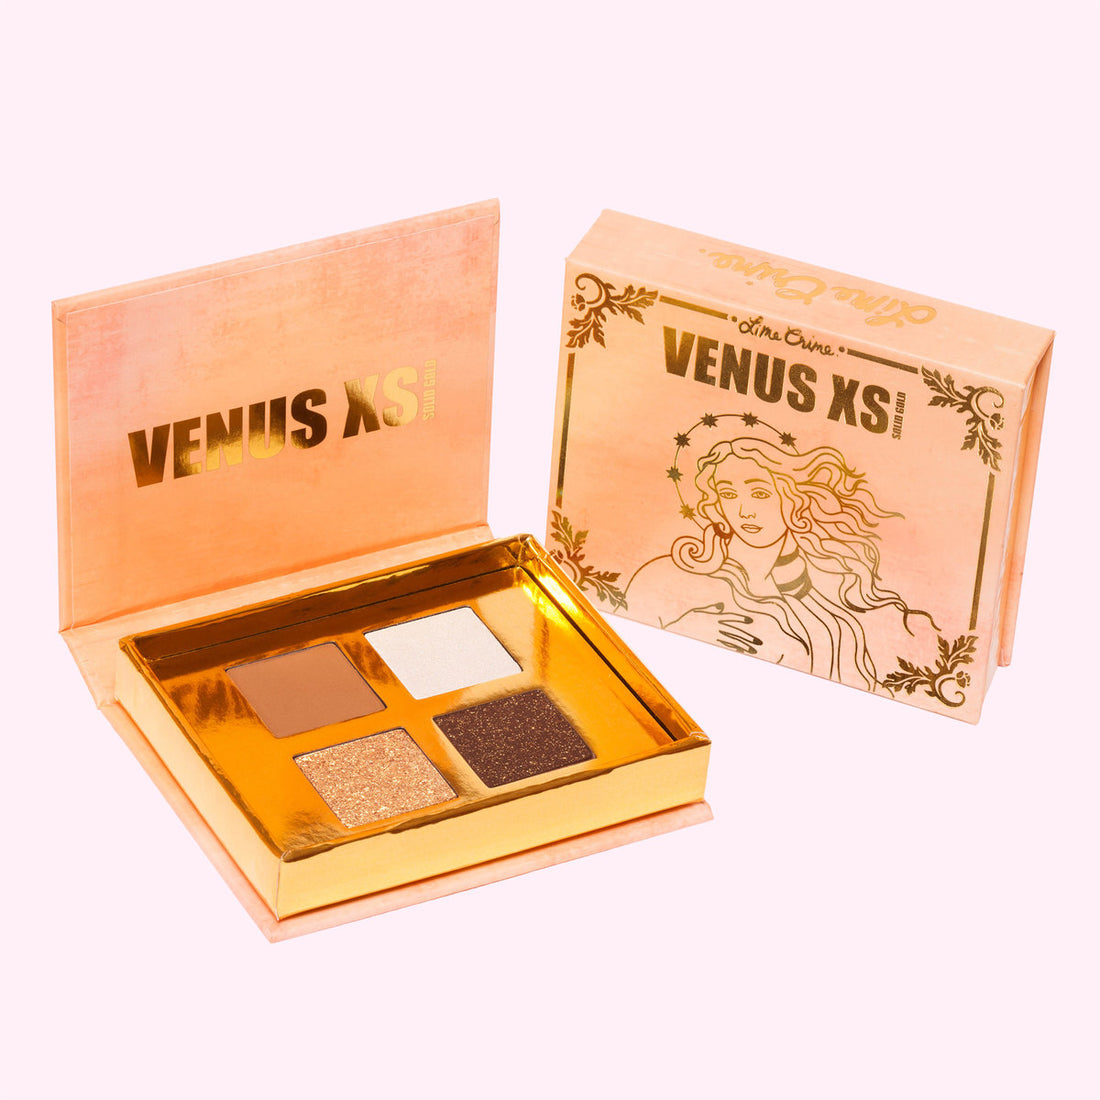 Venus Xs Solid Gold - Una sombra dañada